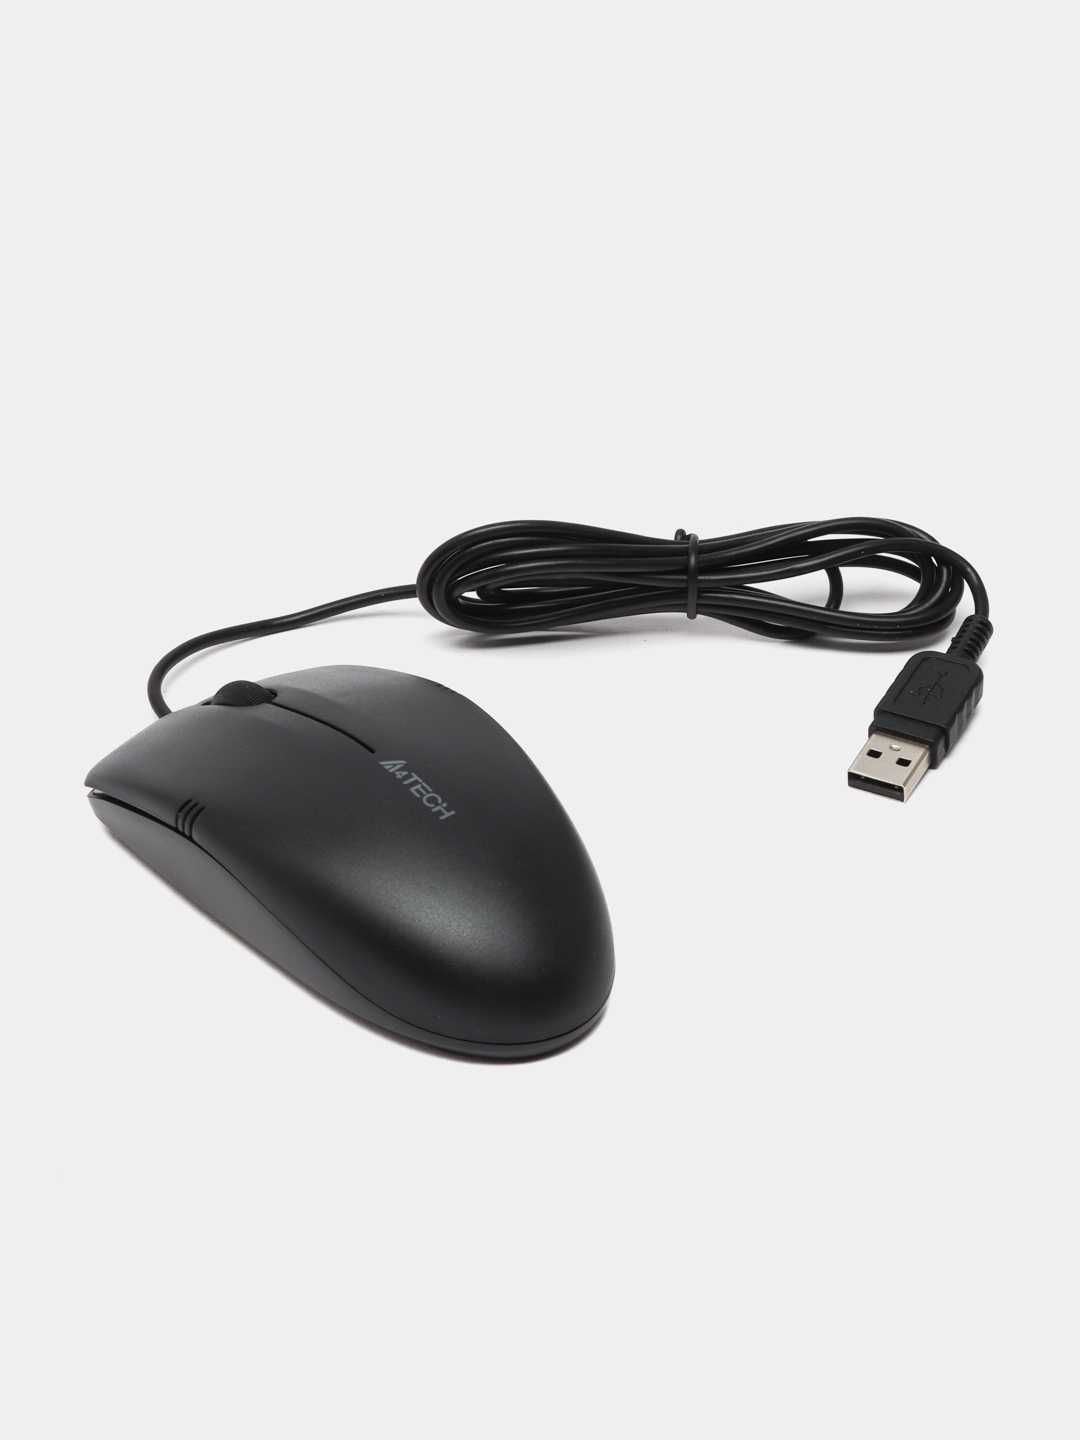 Мышь проводная A4Tech OP-530NU Black Optical Mouse USB